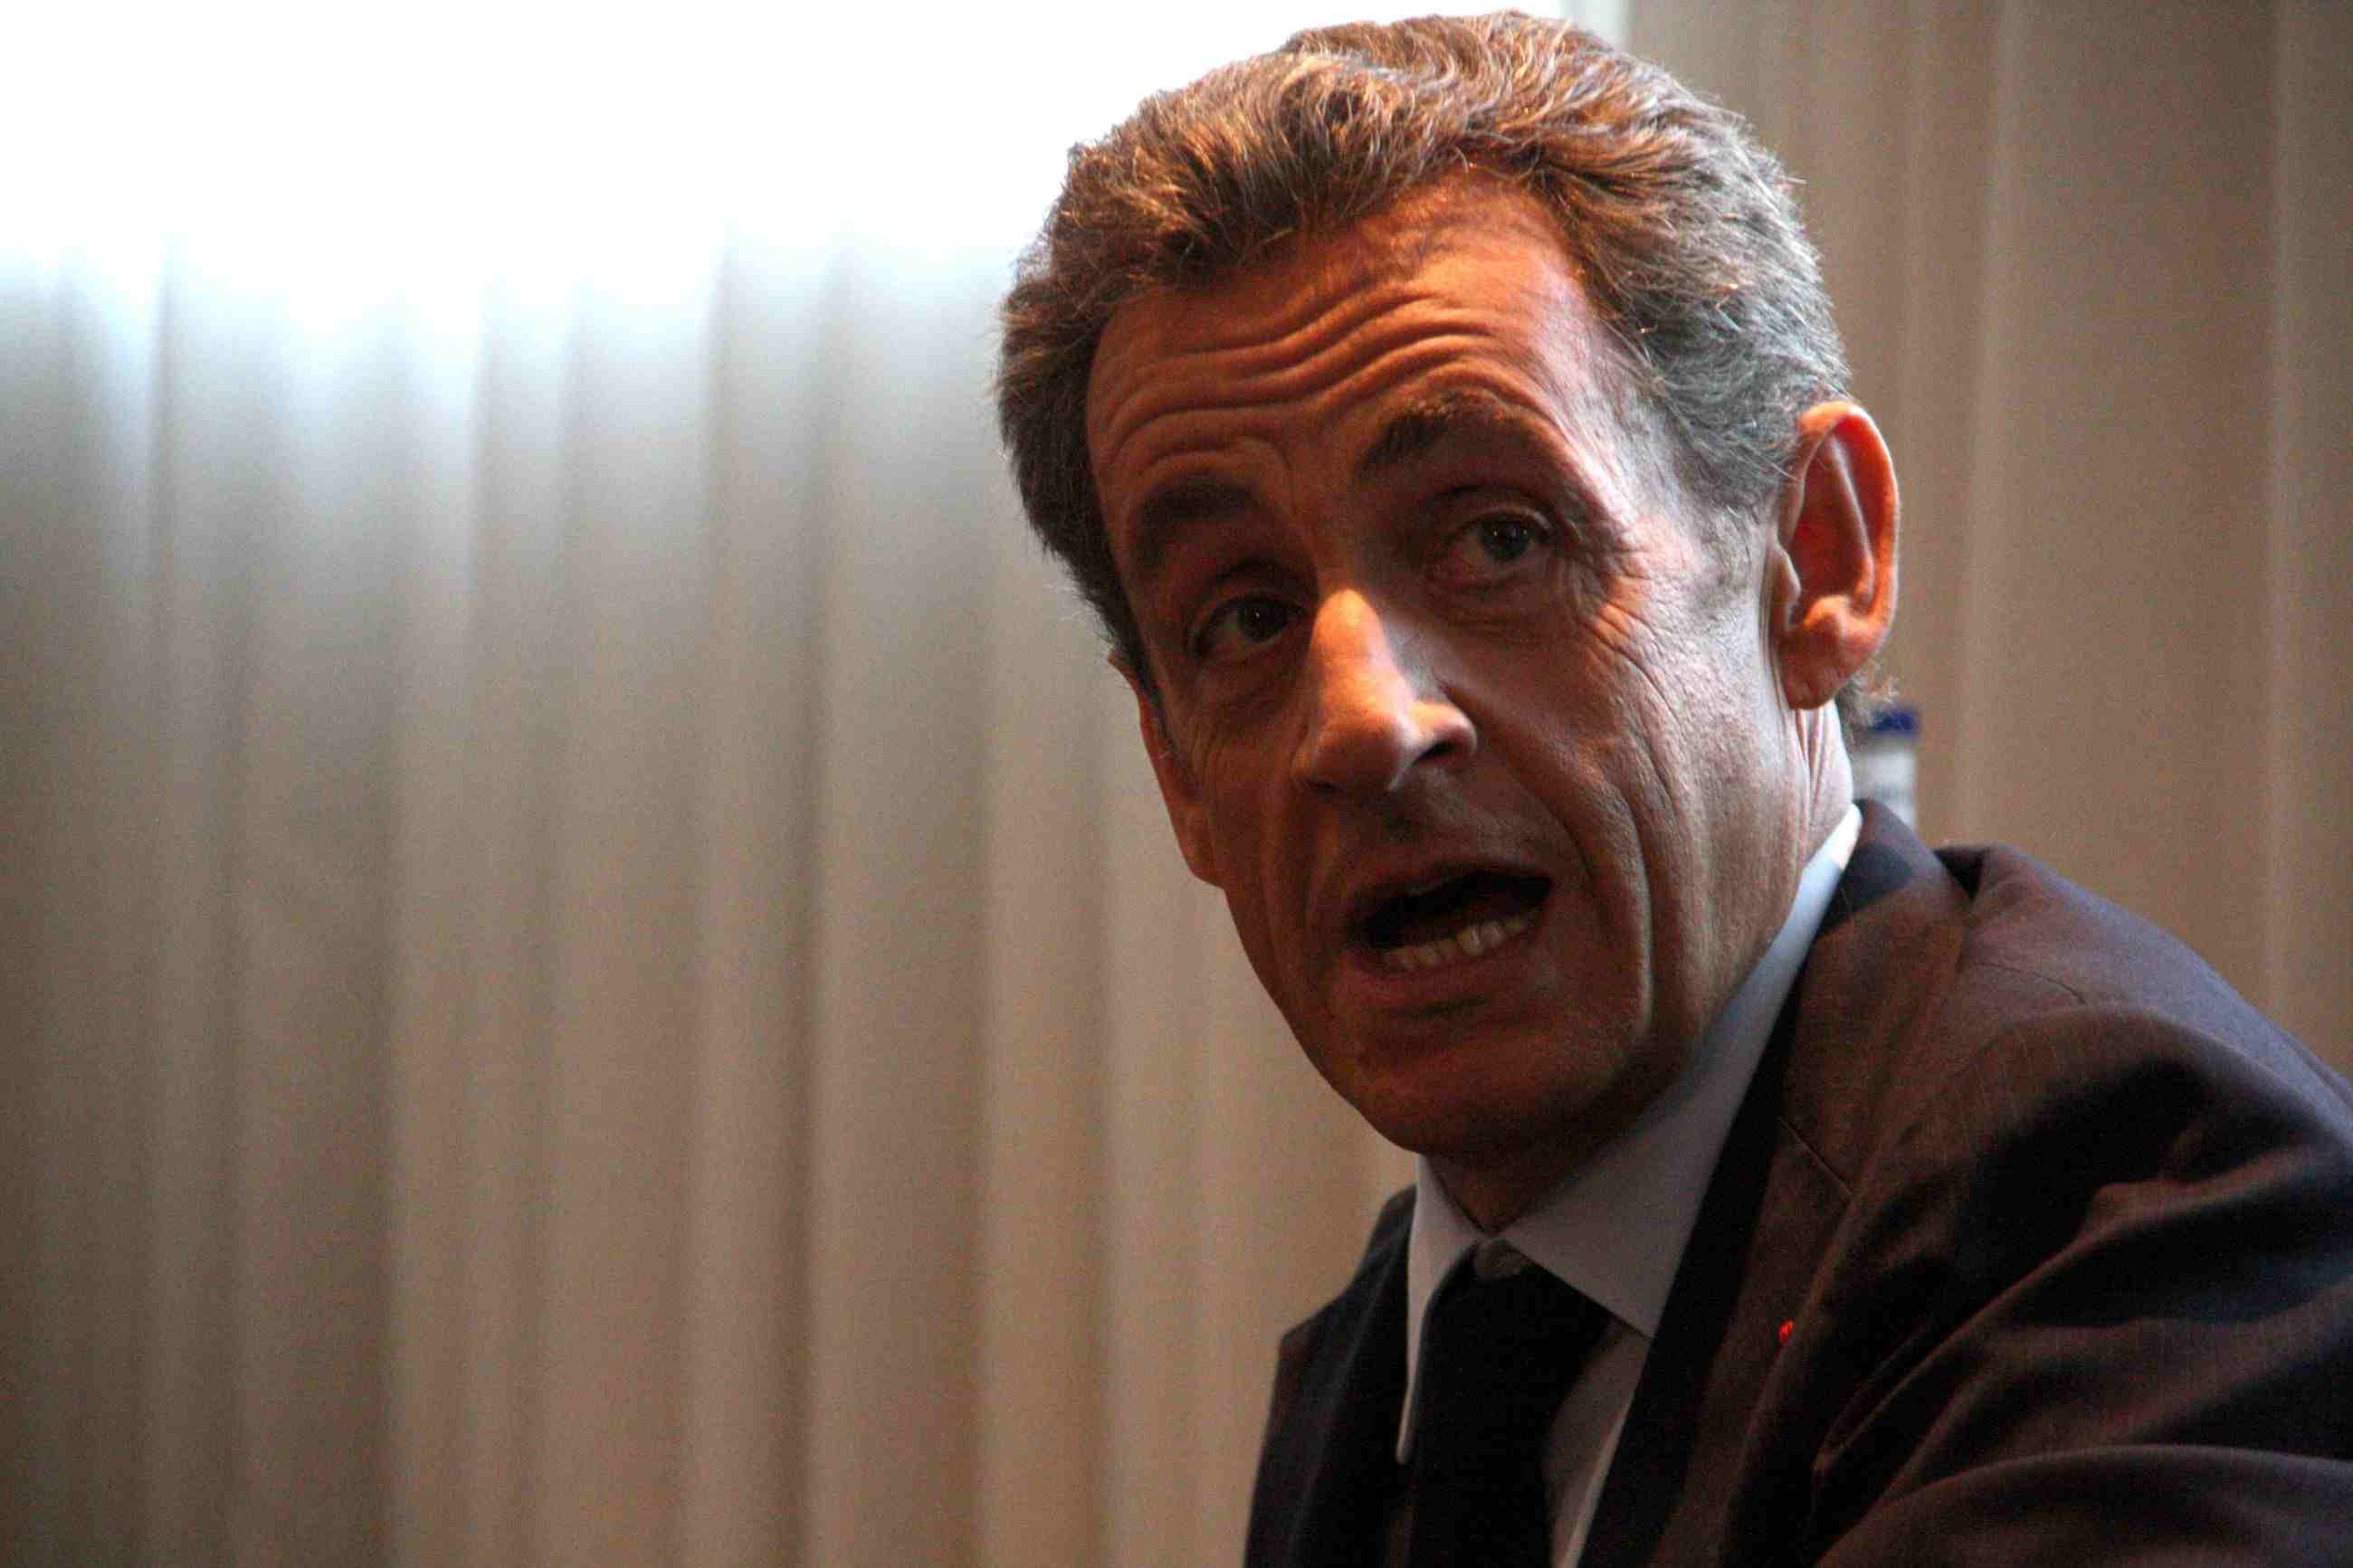 Sarkozy, sota custòdia policial per presumpte finançament il·legal